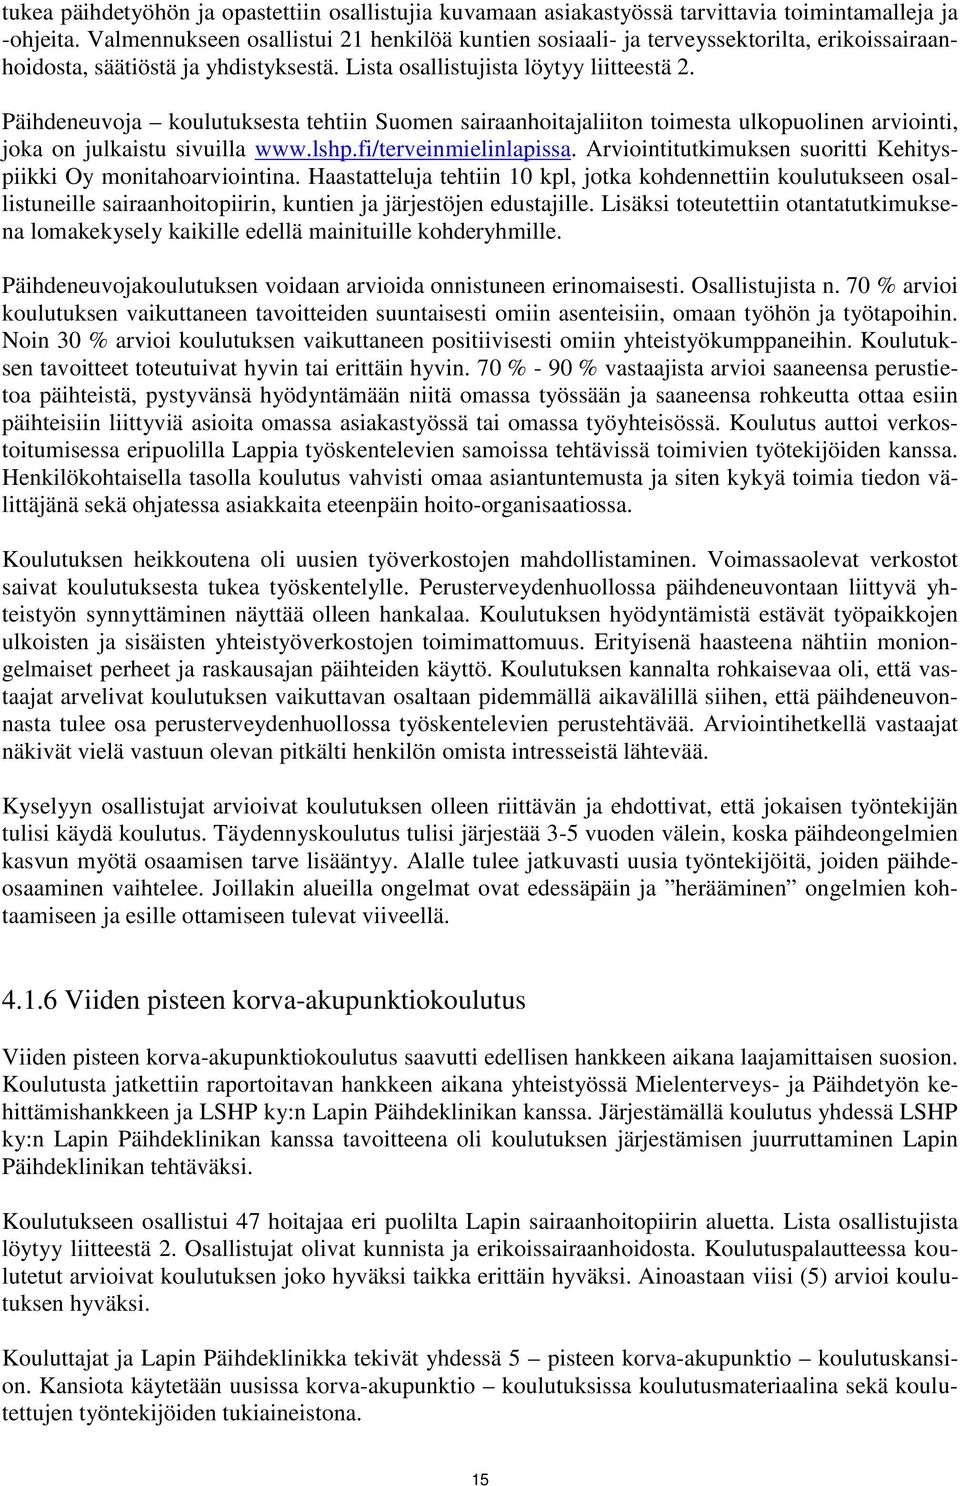 Päihdeneuvoja koulutuksesta tehtiin Suomen sairaanhoitajaliiton toimesta ulkopuolinen arviointi, joka on julkaistu sivuilla www.lshp.fi/terveinmielinlapissa.